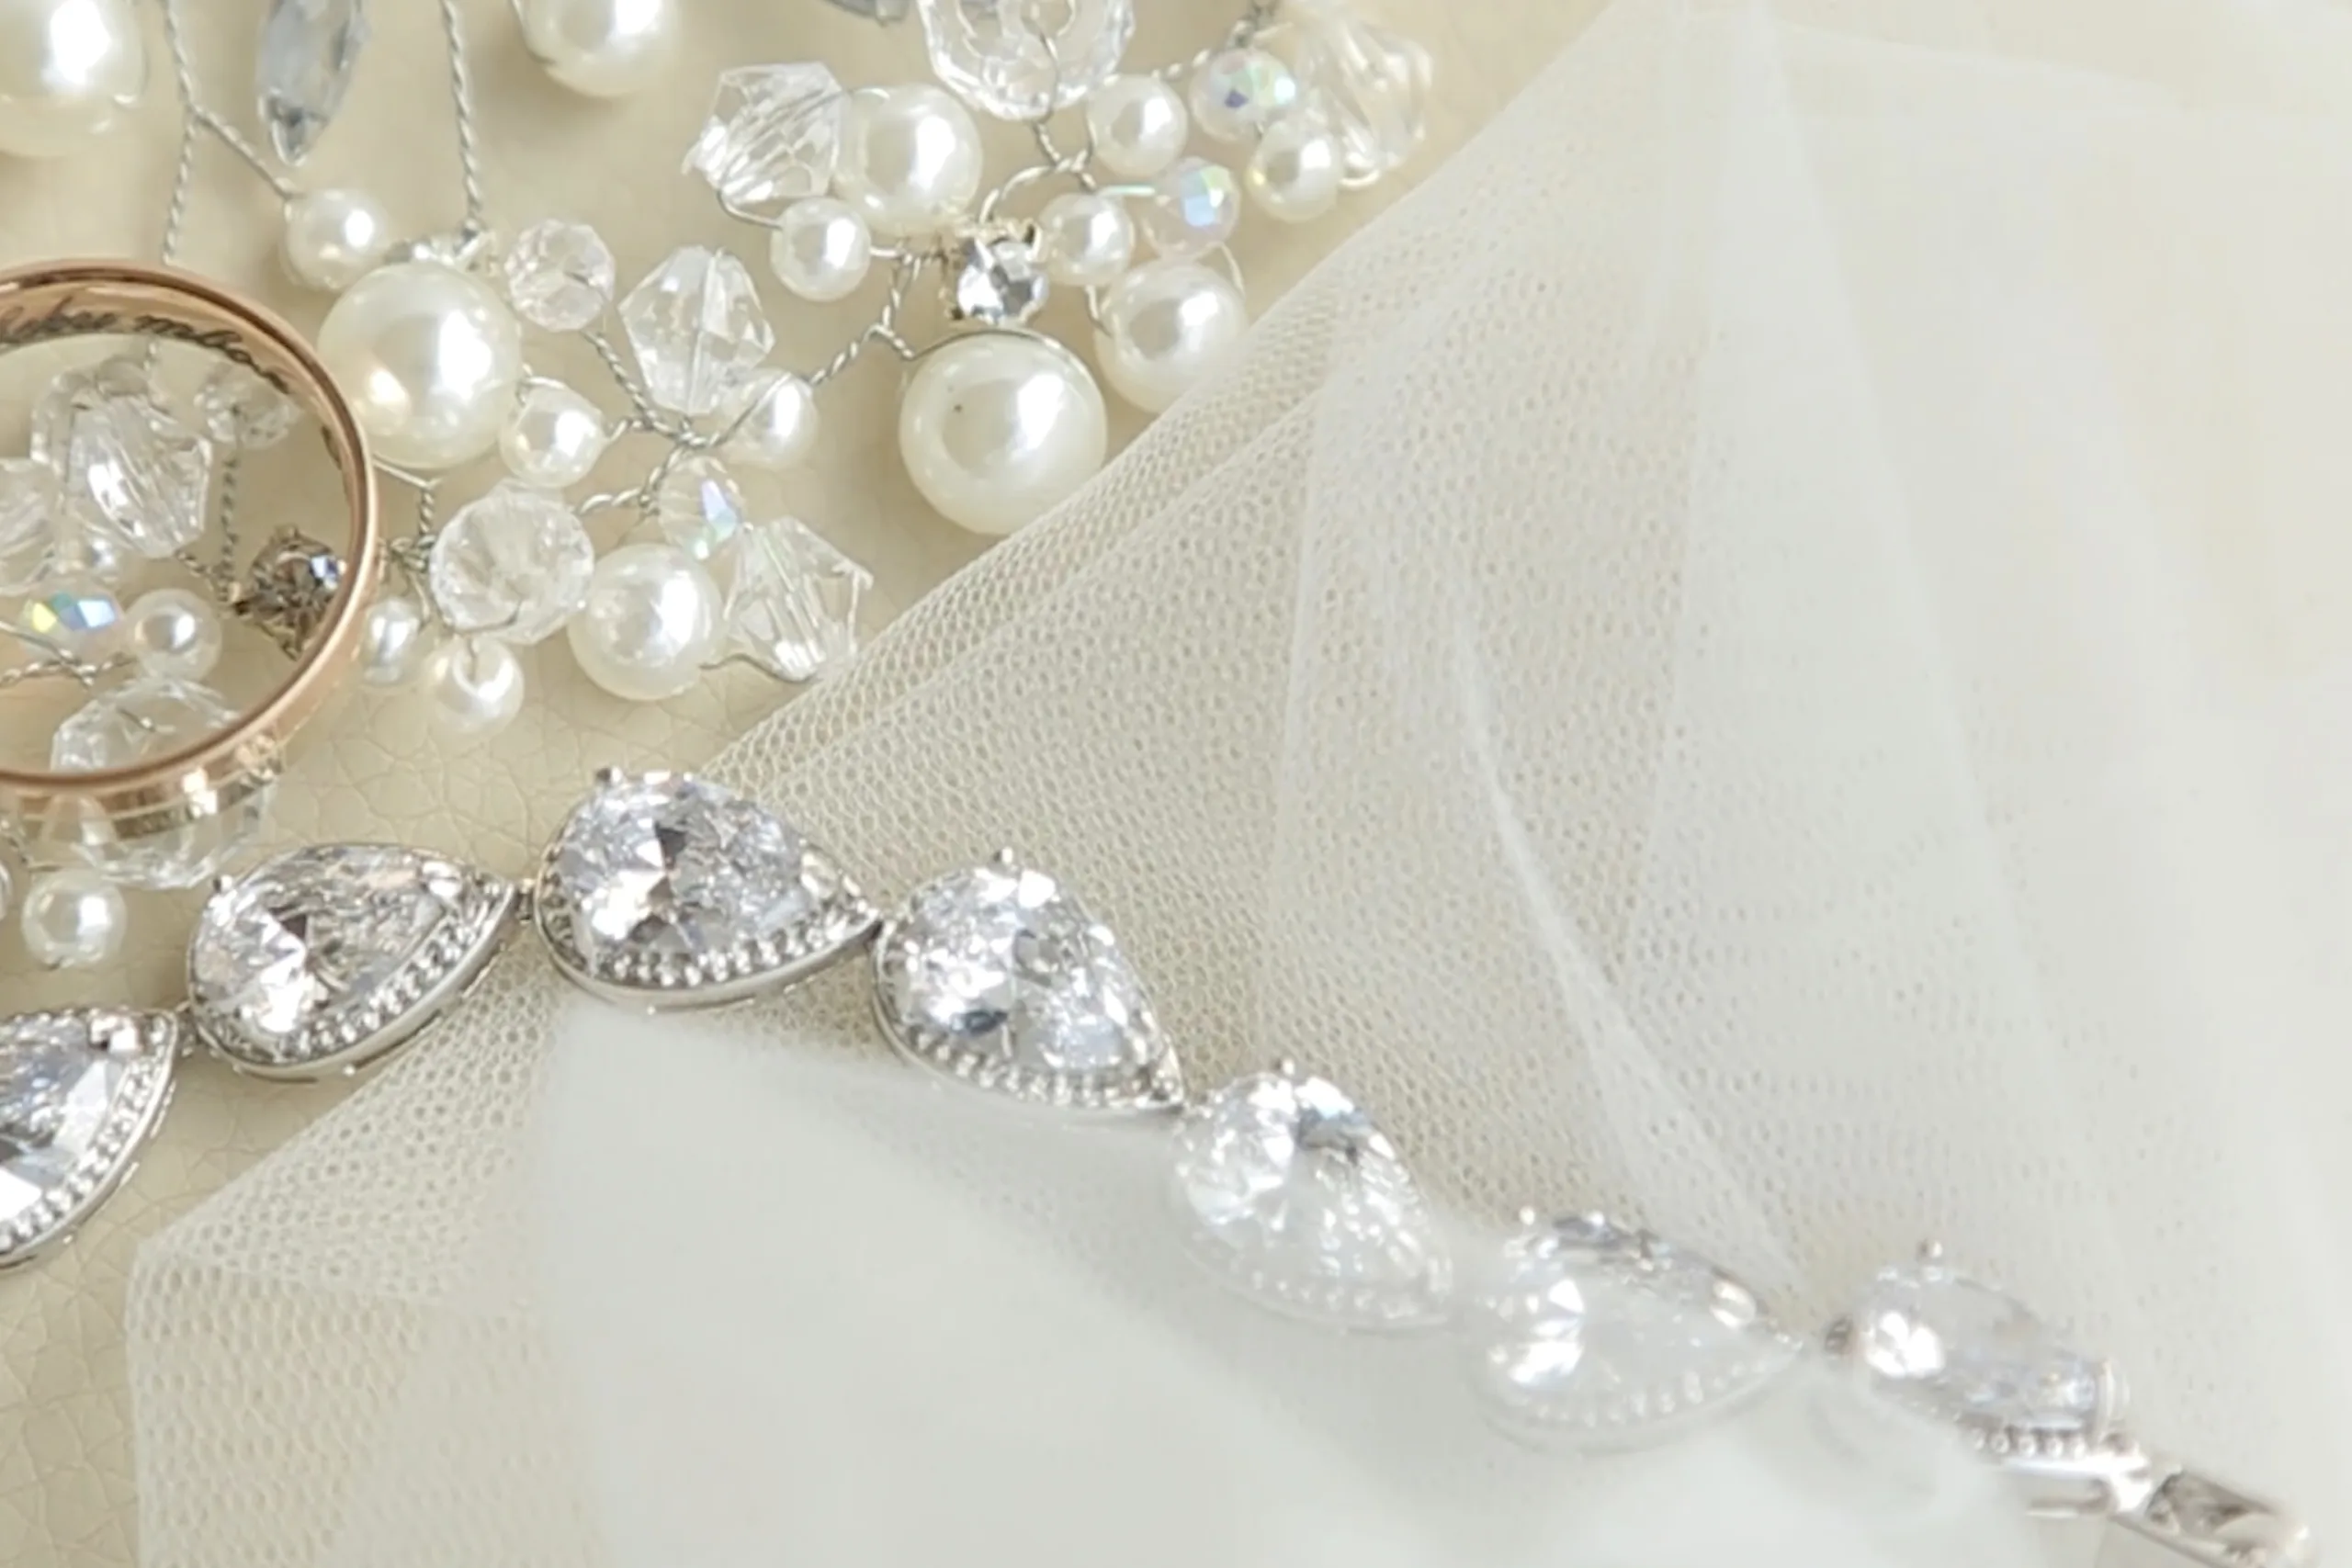 Schmuck und Perlen auf elegantem Stoff.